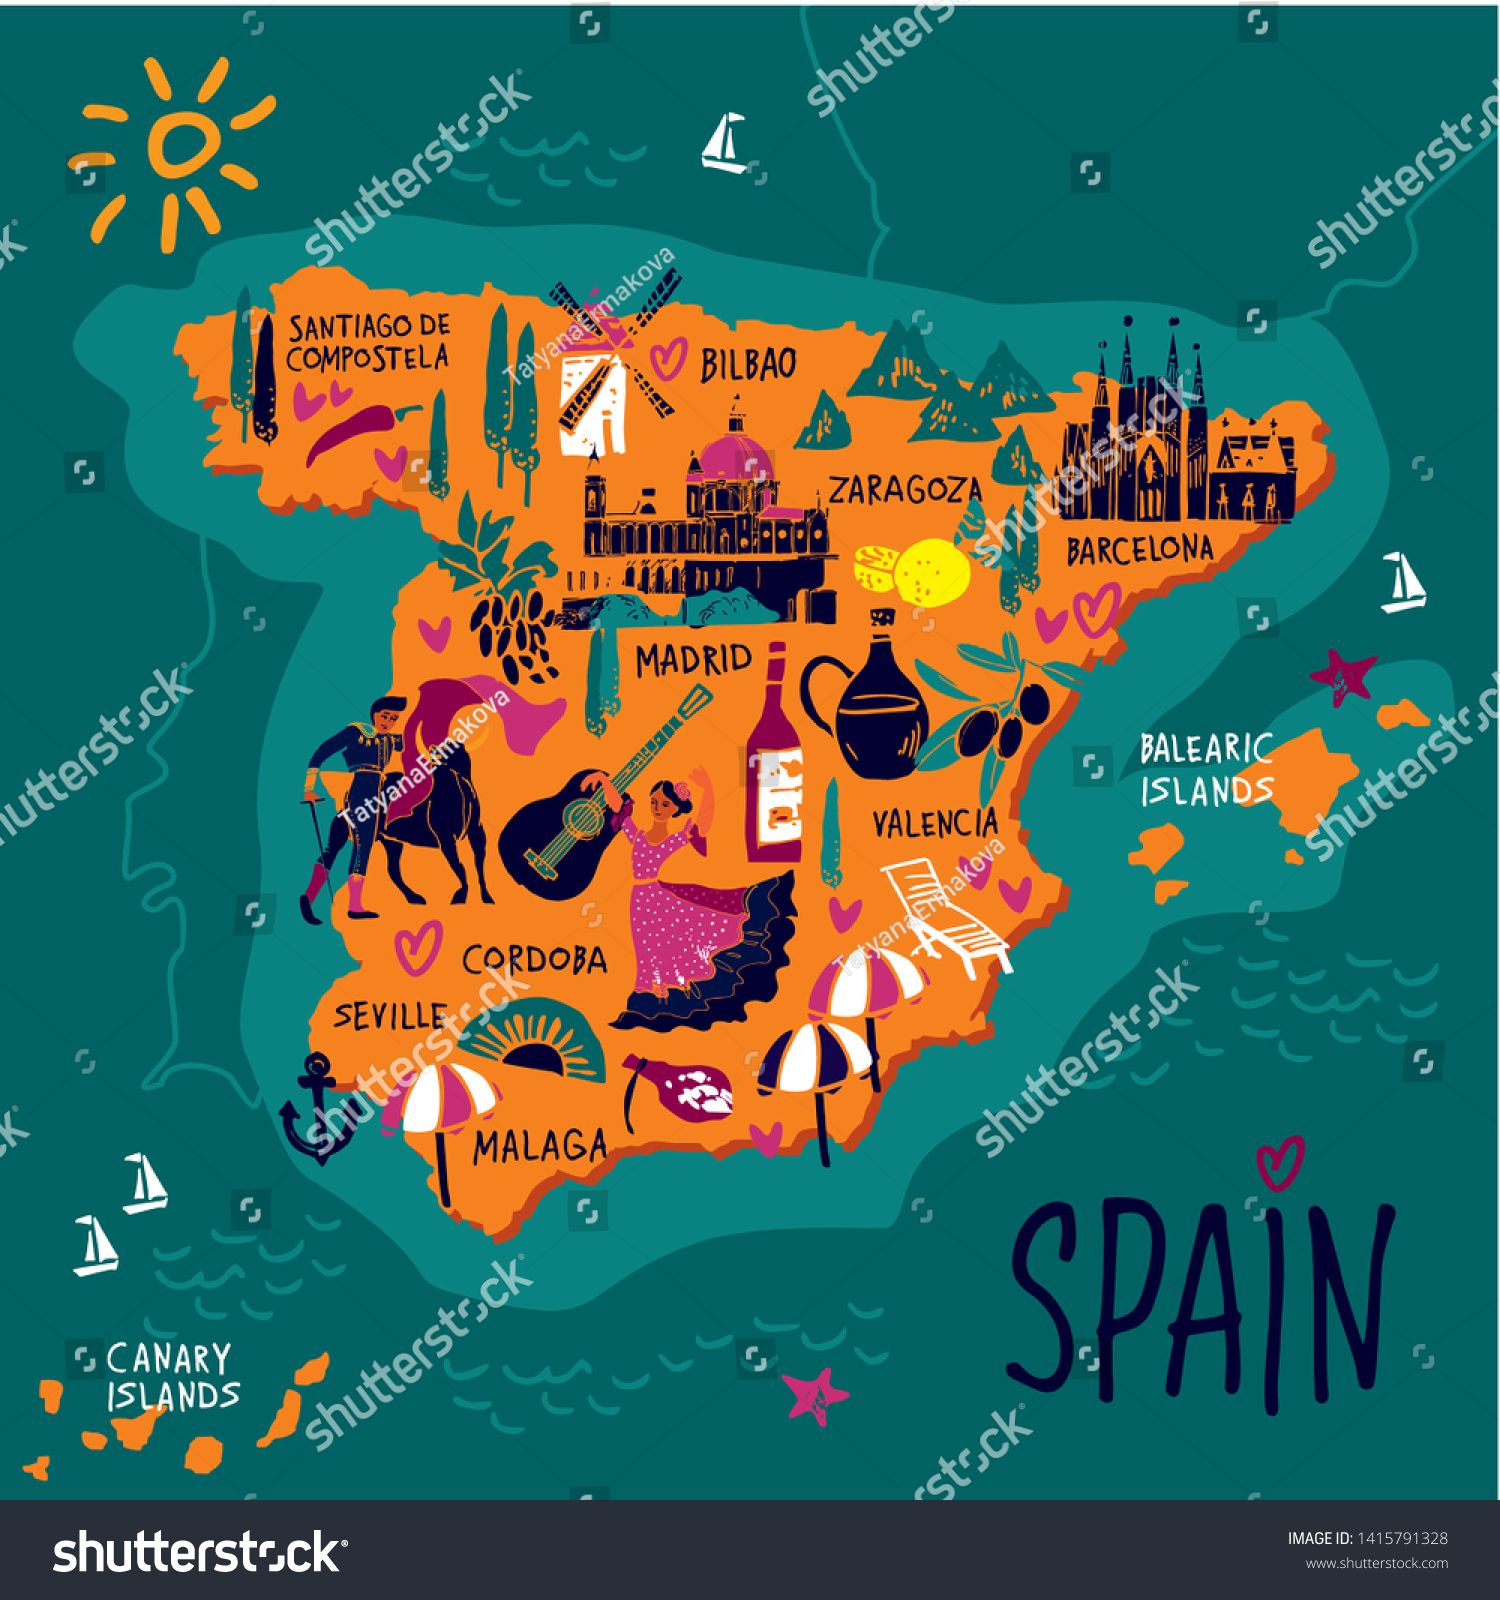 スペインの色のベクター画像スタイル化地図 観光ガイドやポスターに使うスペインの目印 人 食べ物 植物を手描きで描いた旅行イラスト ベクターイラスト のベクター画像素材 ロイヤリティフリー 1415791328